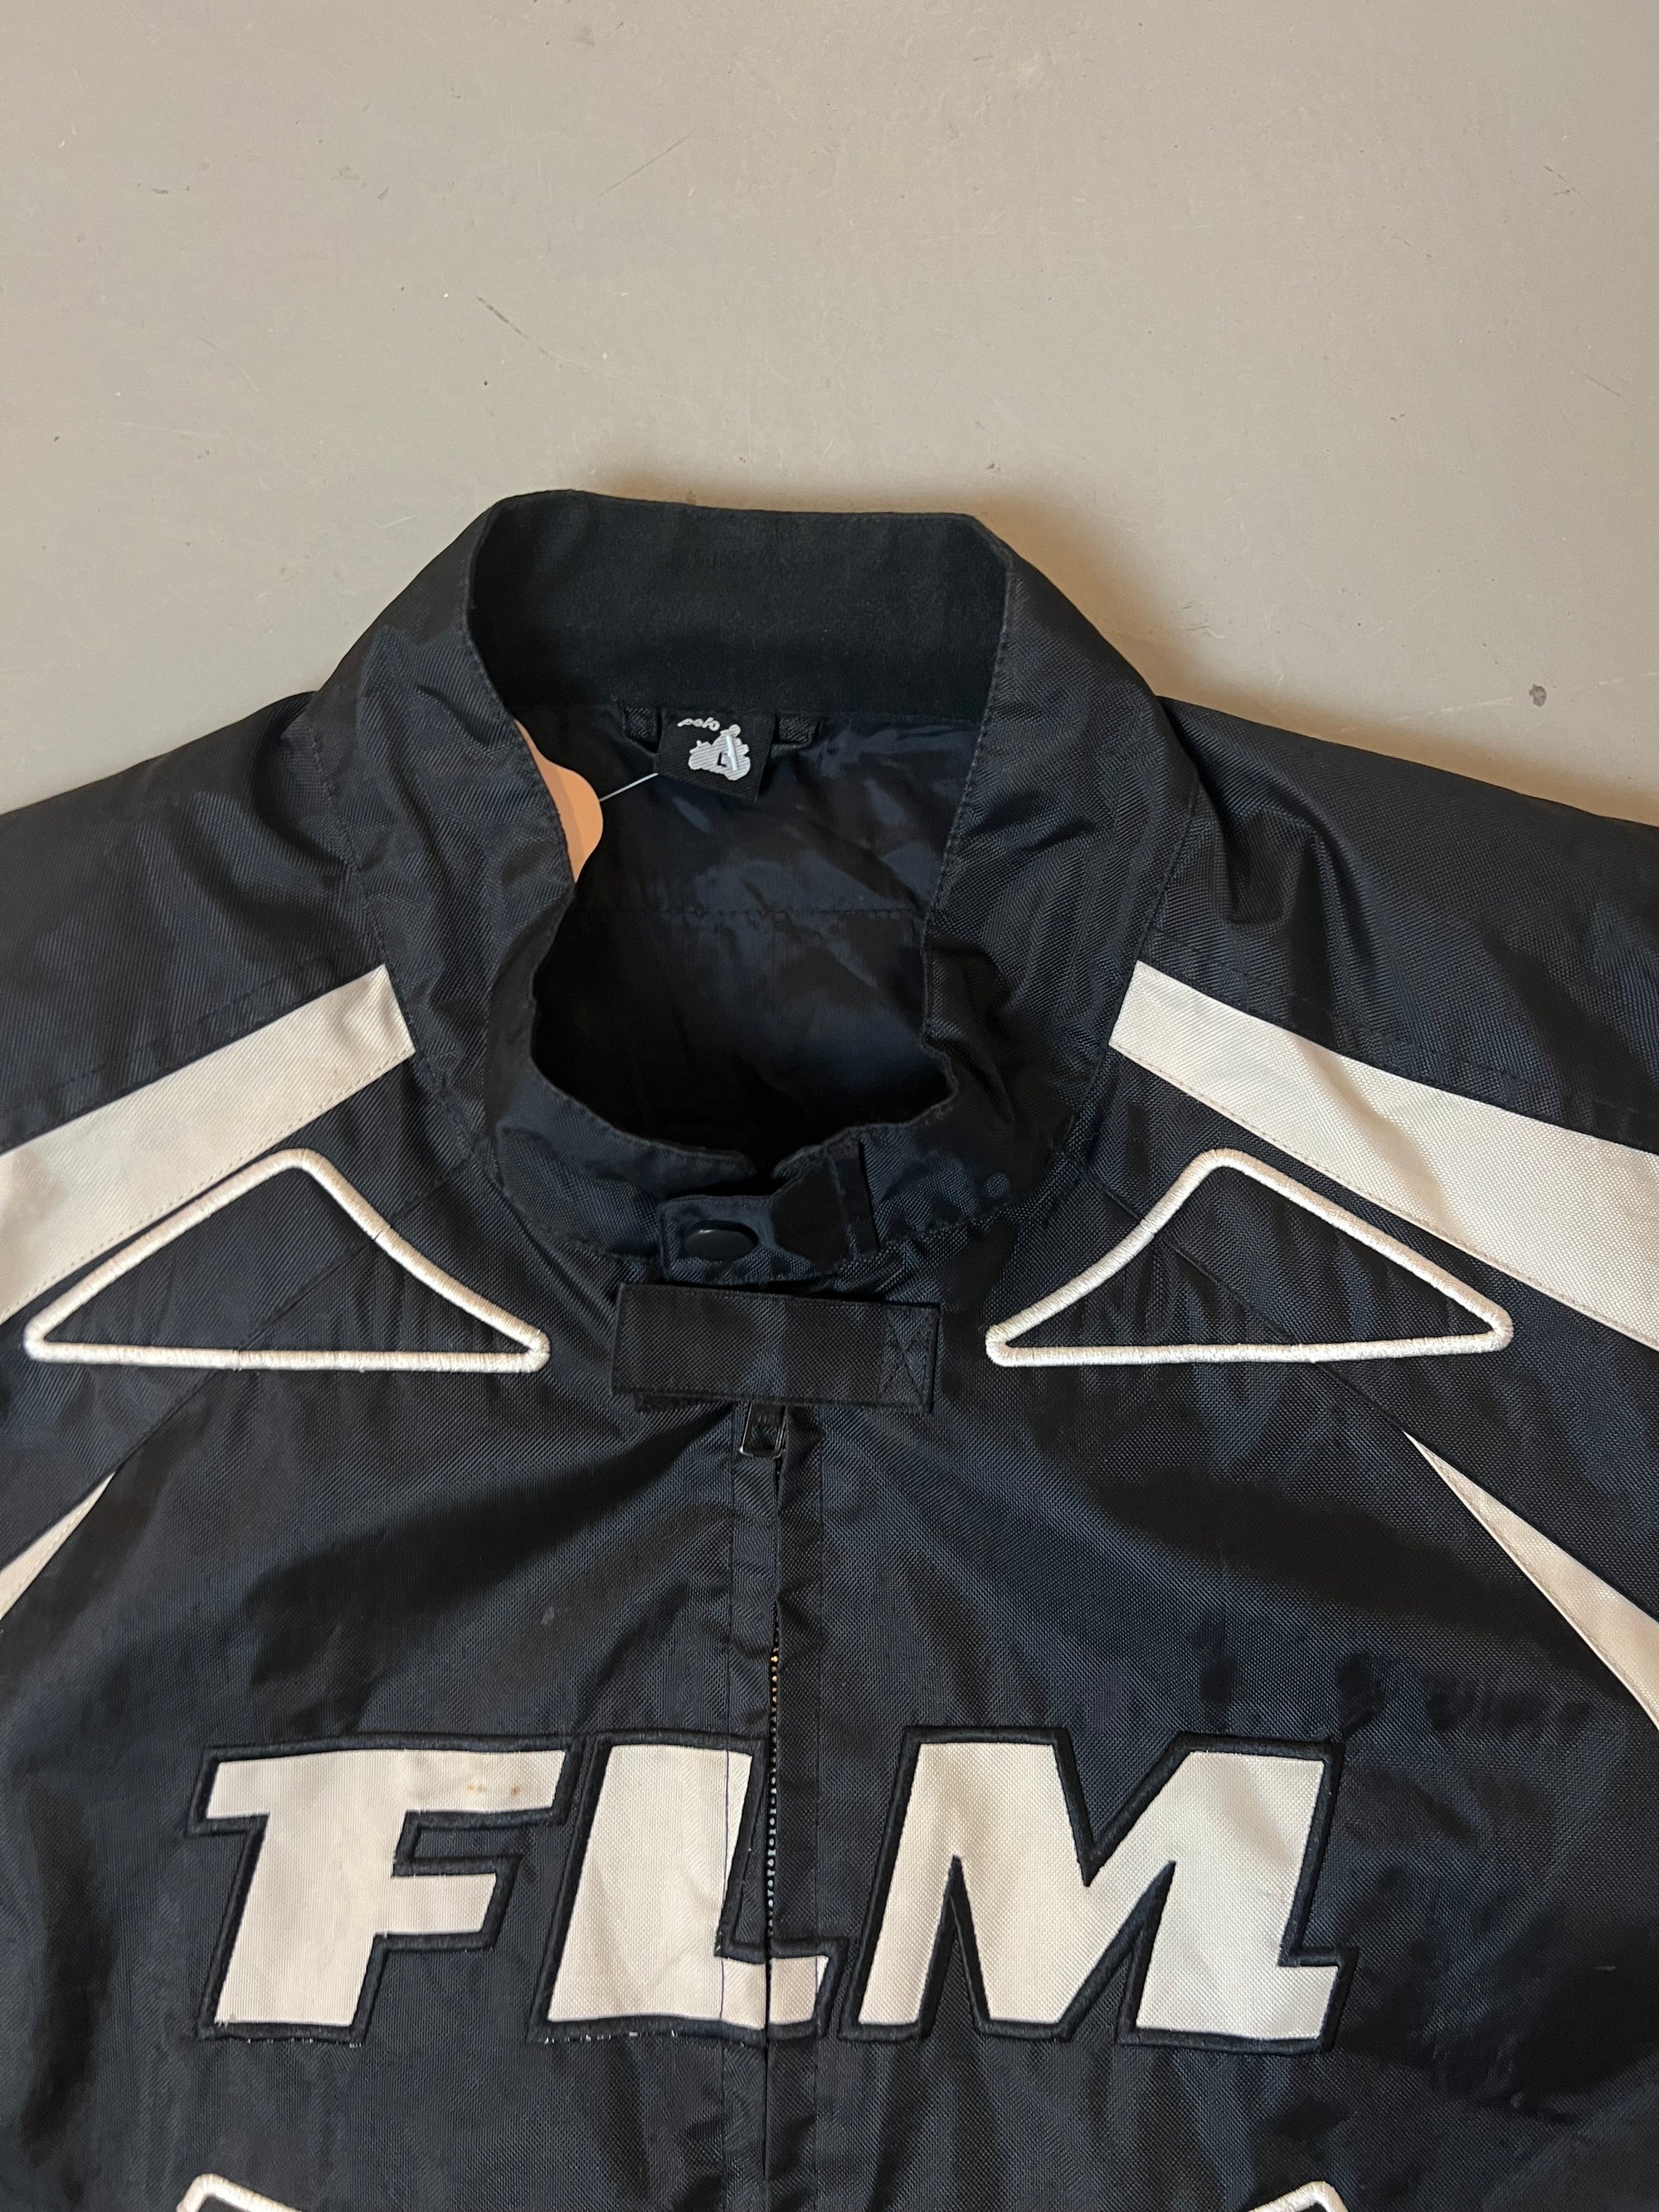 Produkt Bild Vintage FLM Racing Jacket von Kragen